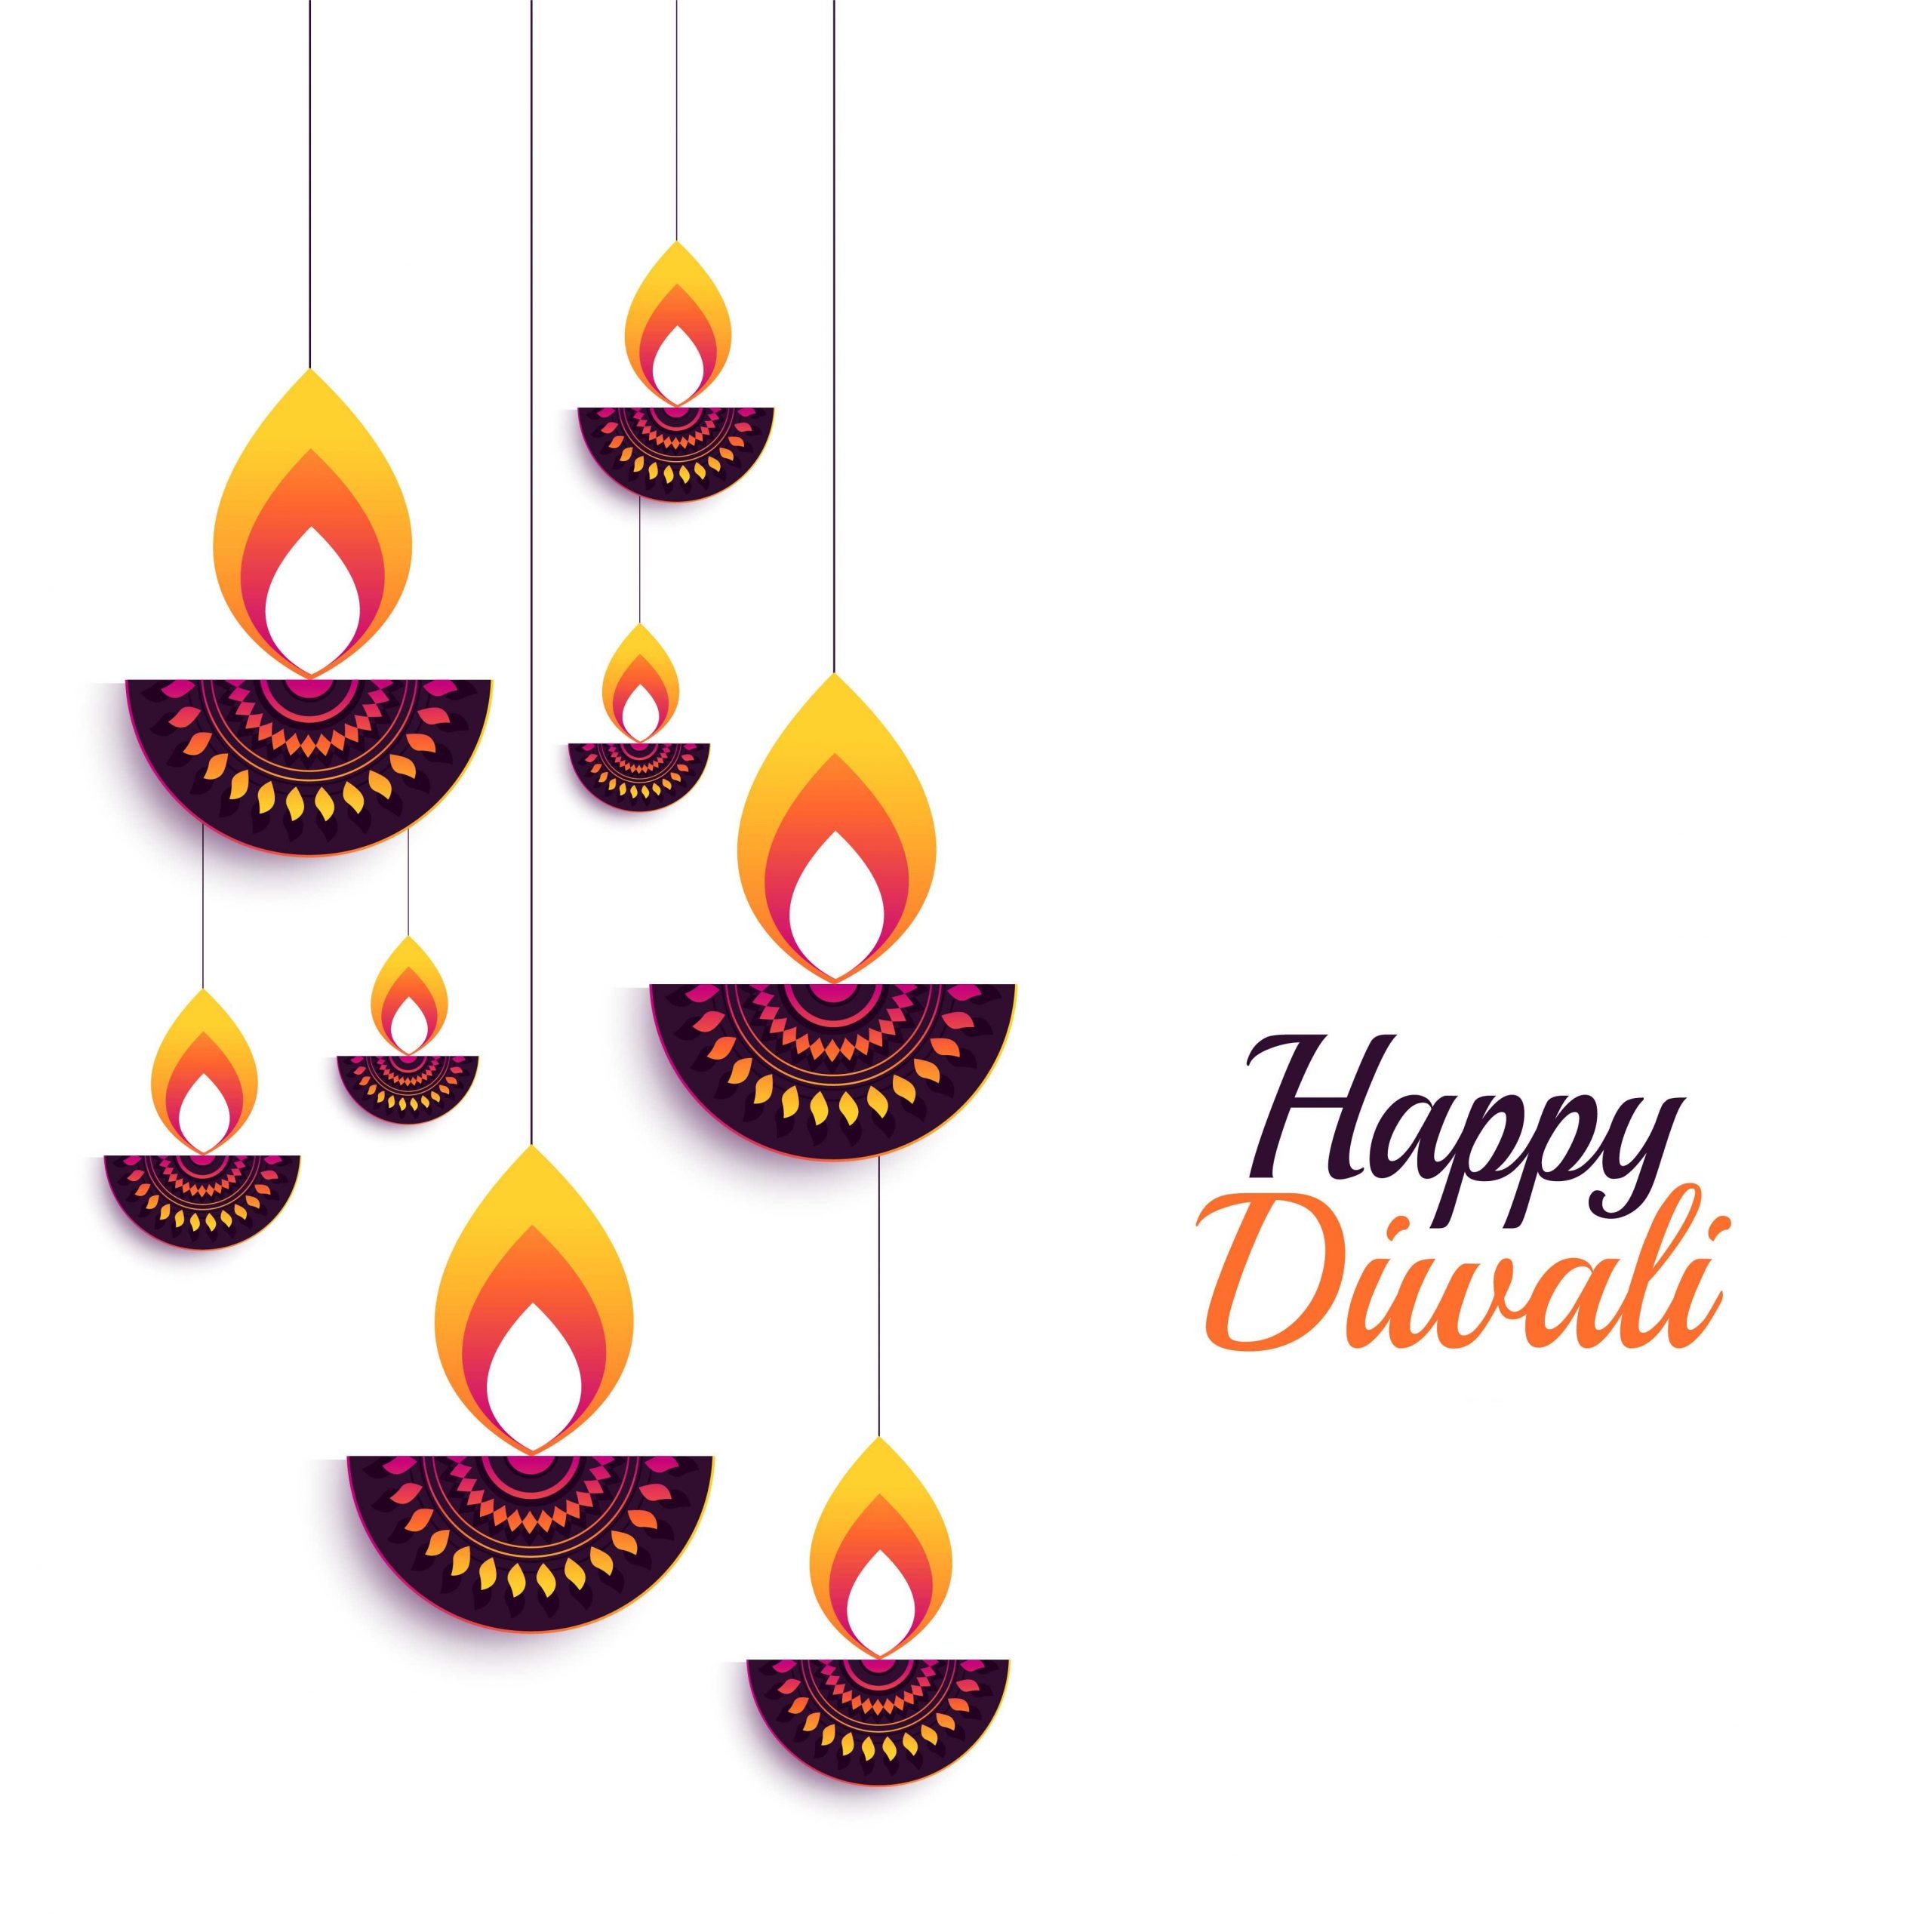 Happy Diwali pics download